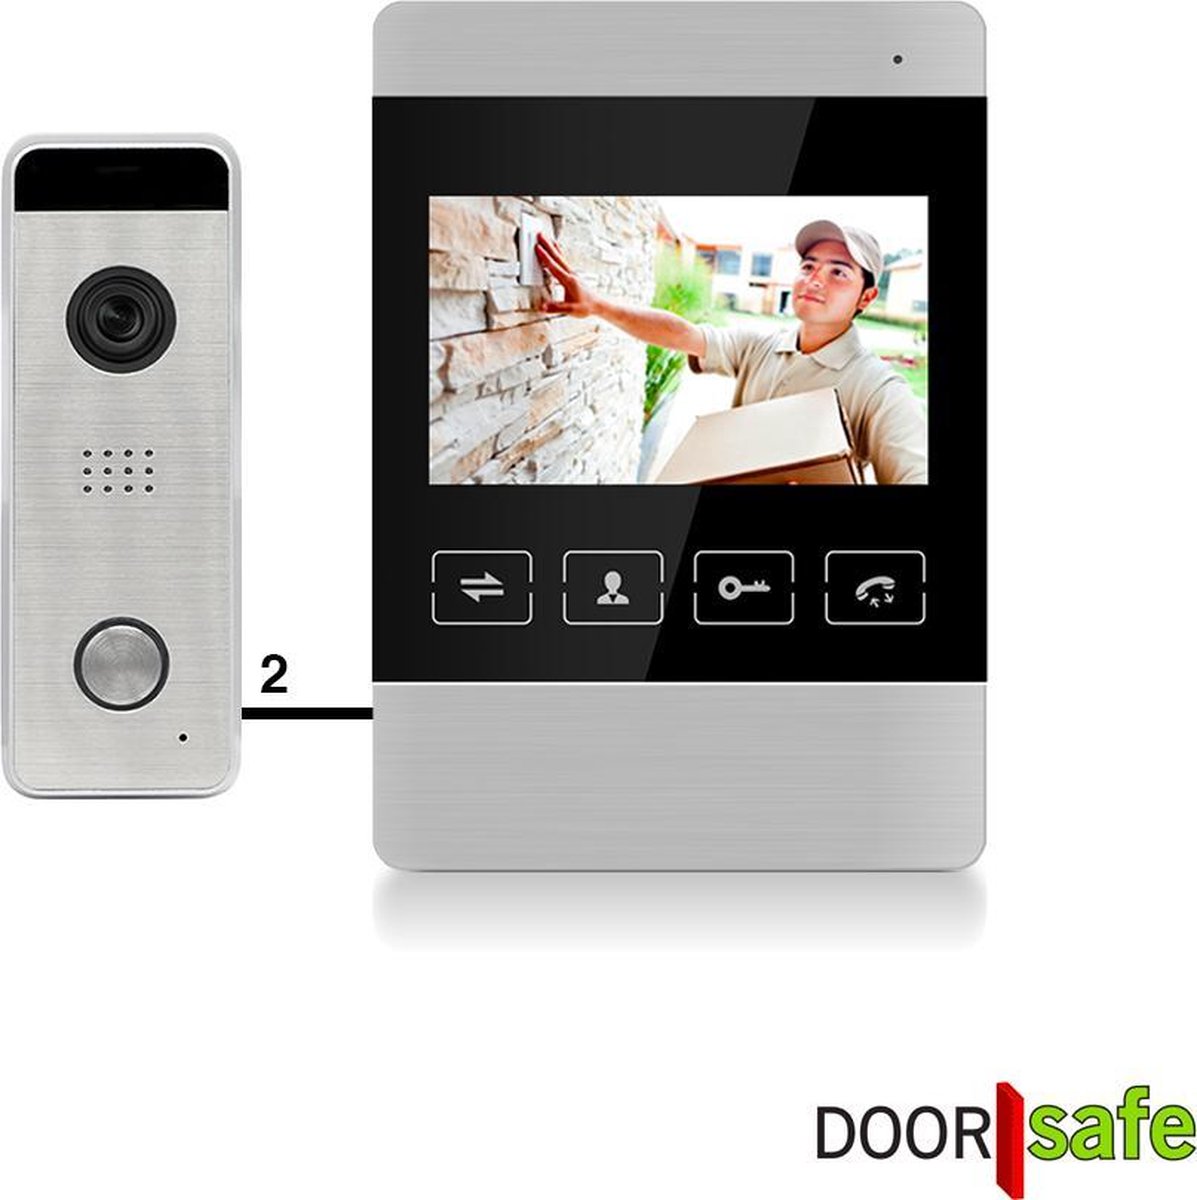 Doorsafe 7120 - Bedrade deurbel met camera, gratis opslag beelden op SD-kaart